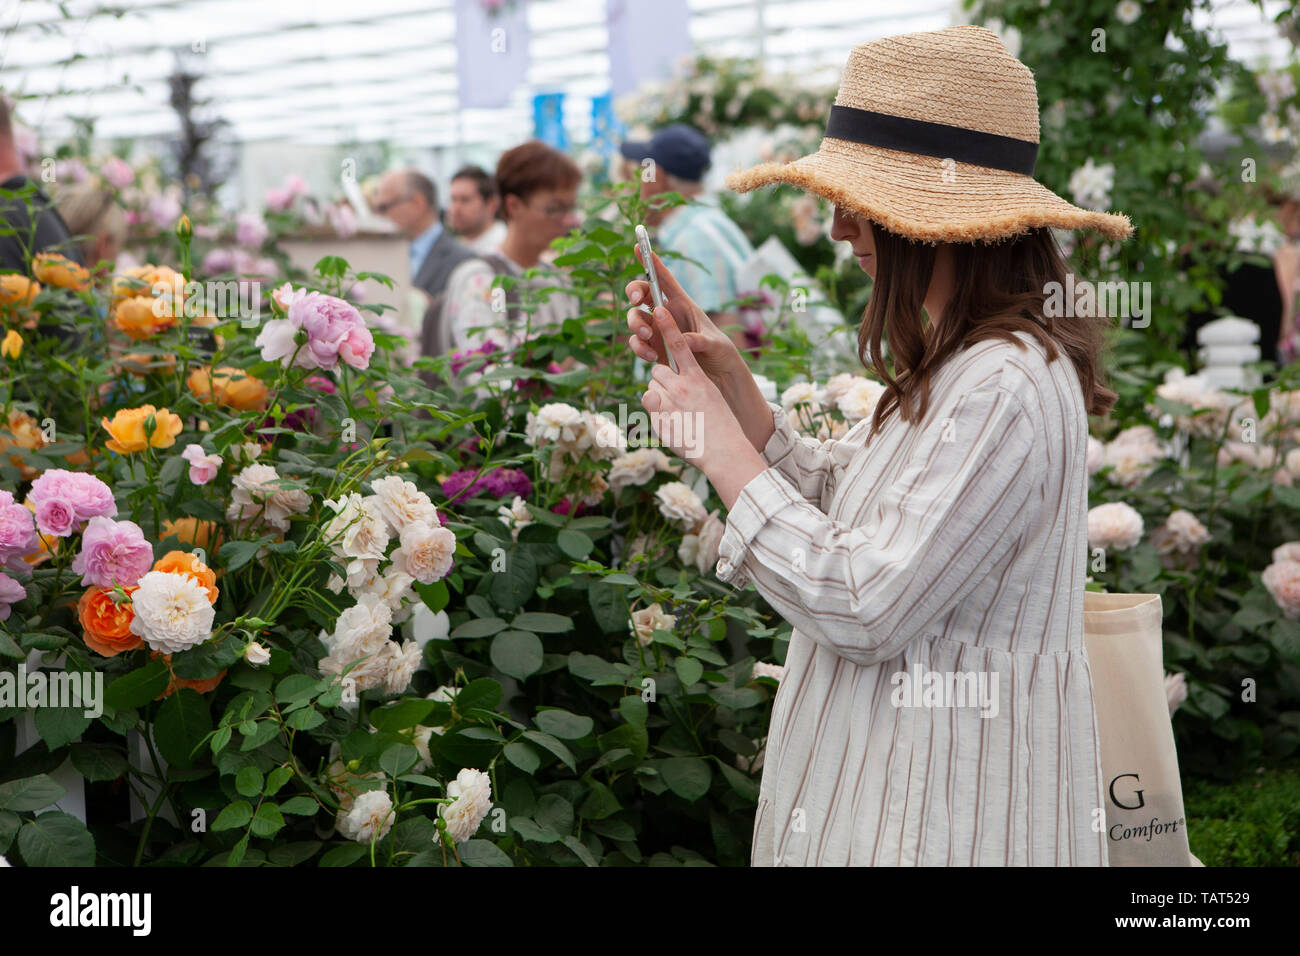 Les RHS Chelsea Flower Show 2019 : une jeune femme dans un chapeau de paille et robe blanche prend une photo avec son téléphone à l'un des stands commerciaux dans la grande Pavillion. Banque D'Images